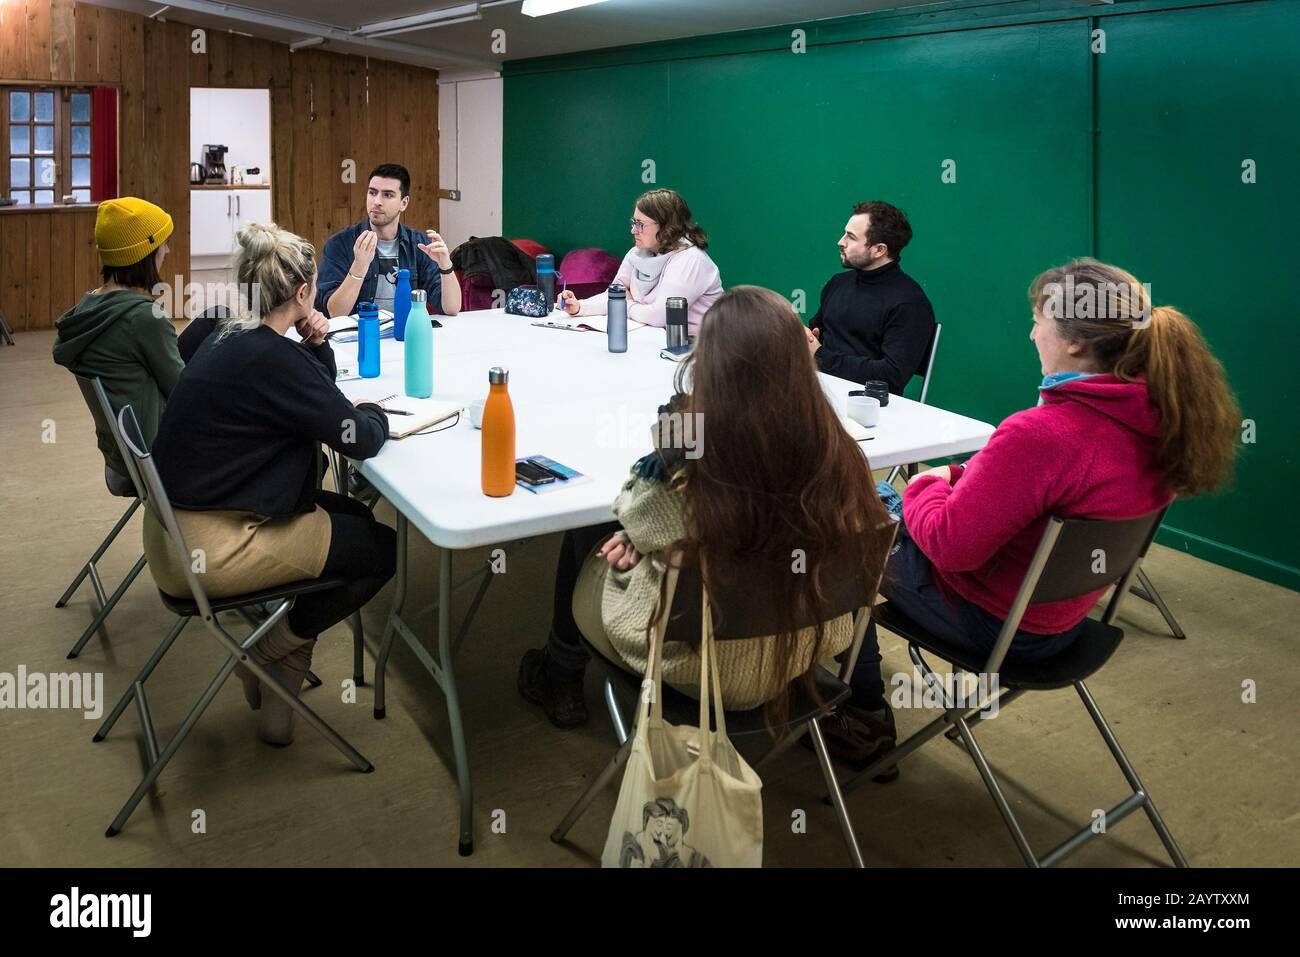 Actores en una sala de ensayo escuchando a un director hablando sobre la investigación y desarrollo de nuevos trabajos teatrales. Foto de stock